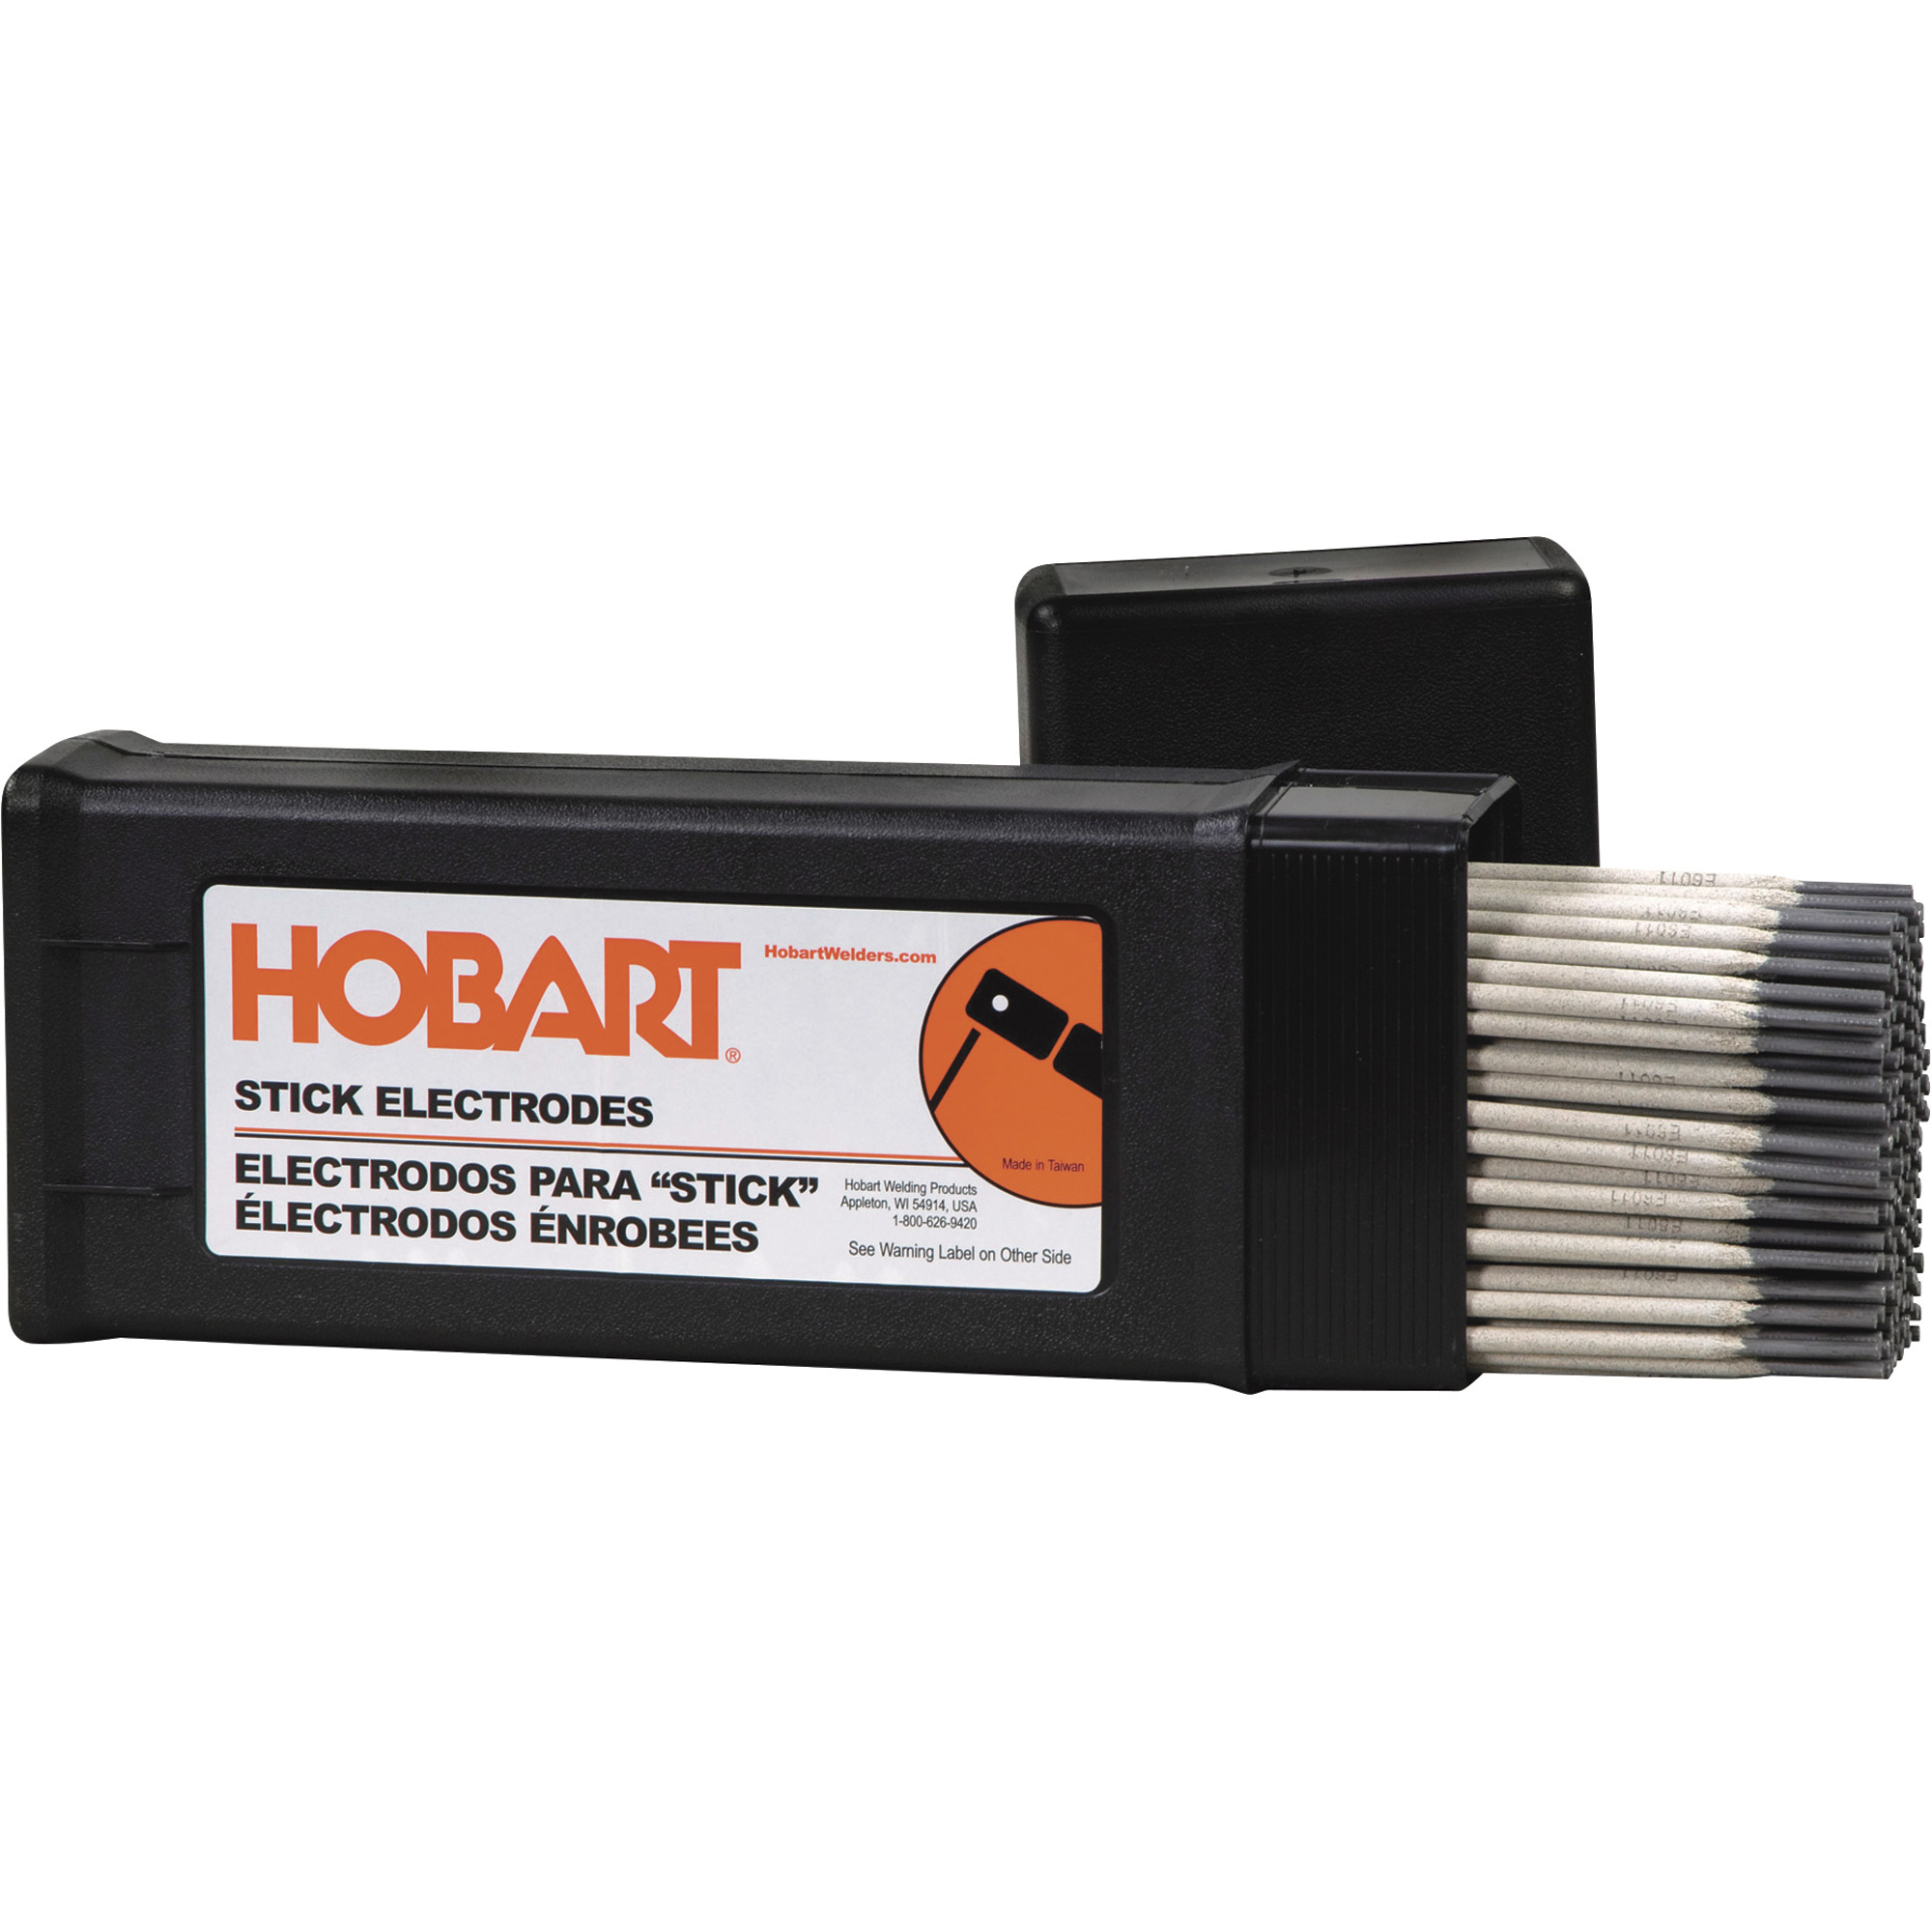 Hobart Filler Metals Stick Welding Electrodes â 6013, 3/32Inch x 12Inch L, 10-Lb. Container, Model 770467